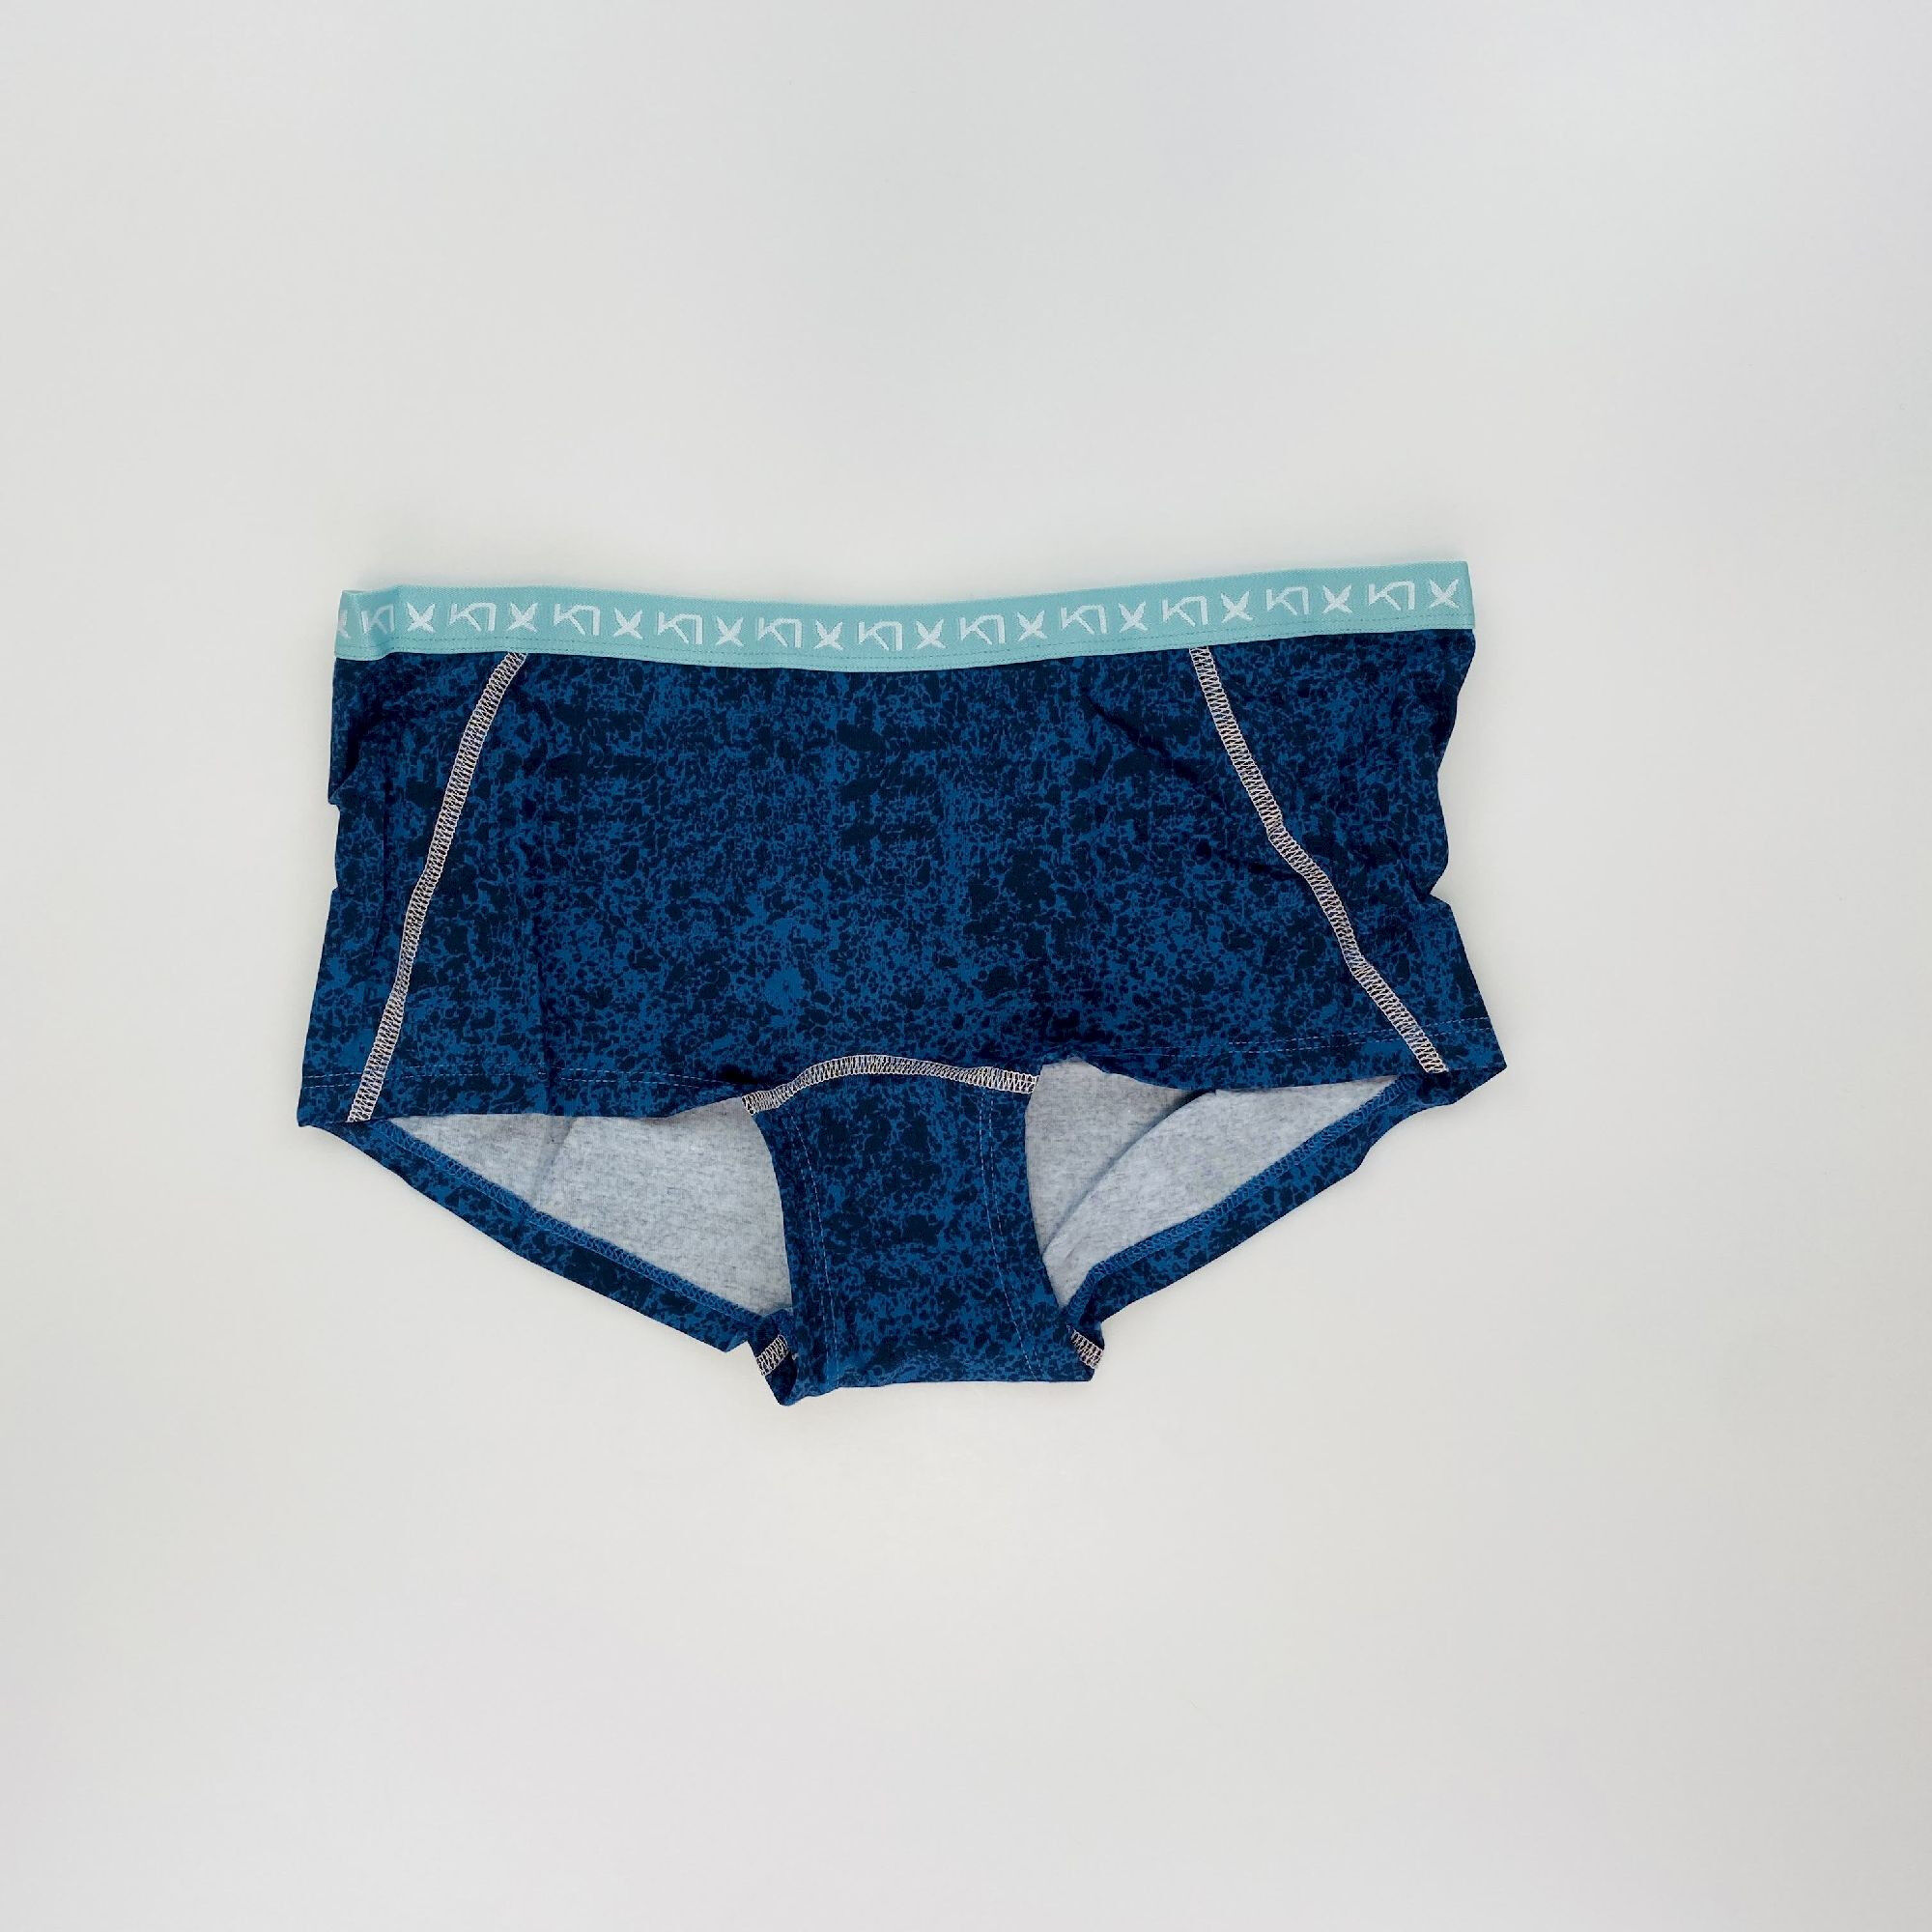 https://images.hardloop.fr/510924/kari-traa-dekorativ-hipster-second-hand-underwear-blue-m.jpg?w=auto&h=auto&q=80